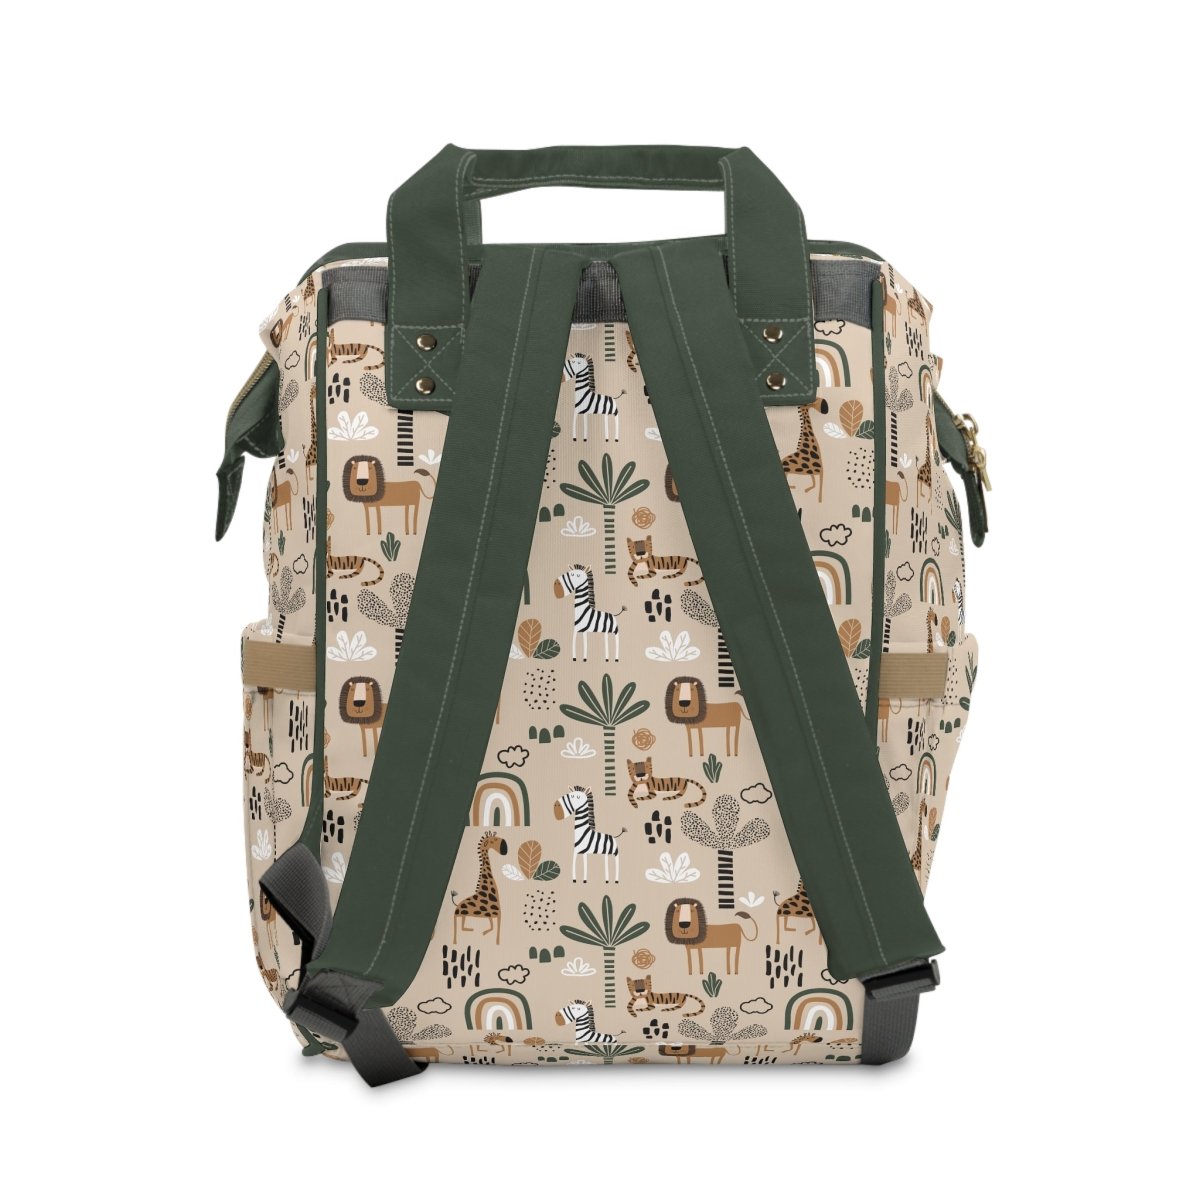 Mod Safari Personalized Backpack Diaper Bag - gender_boy, Mod Safari, text